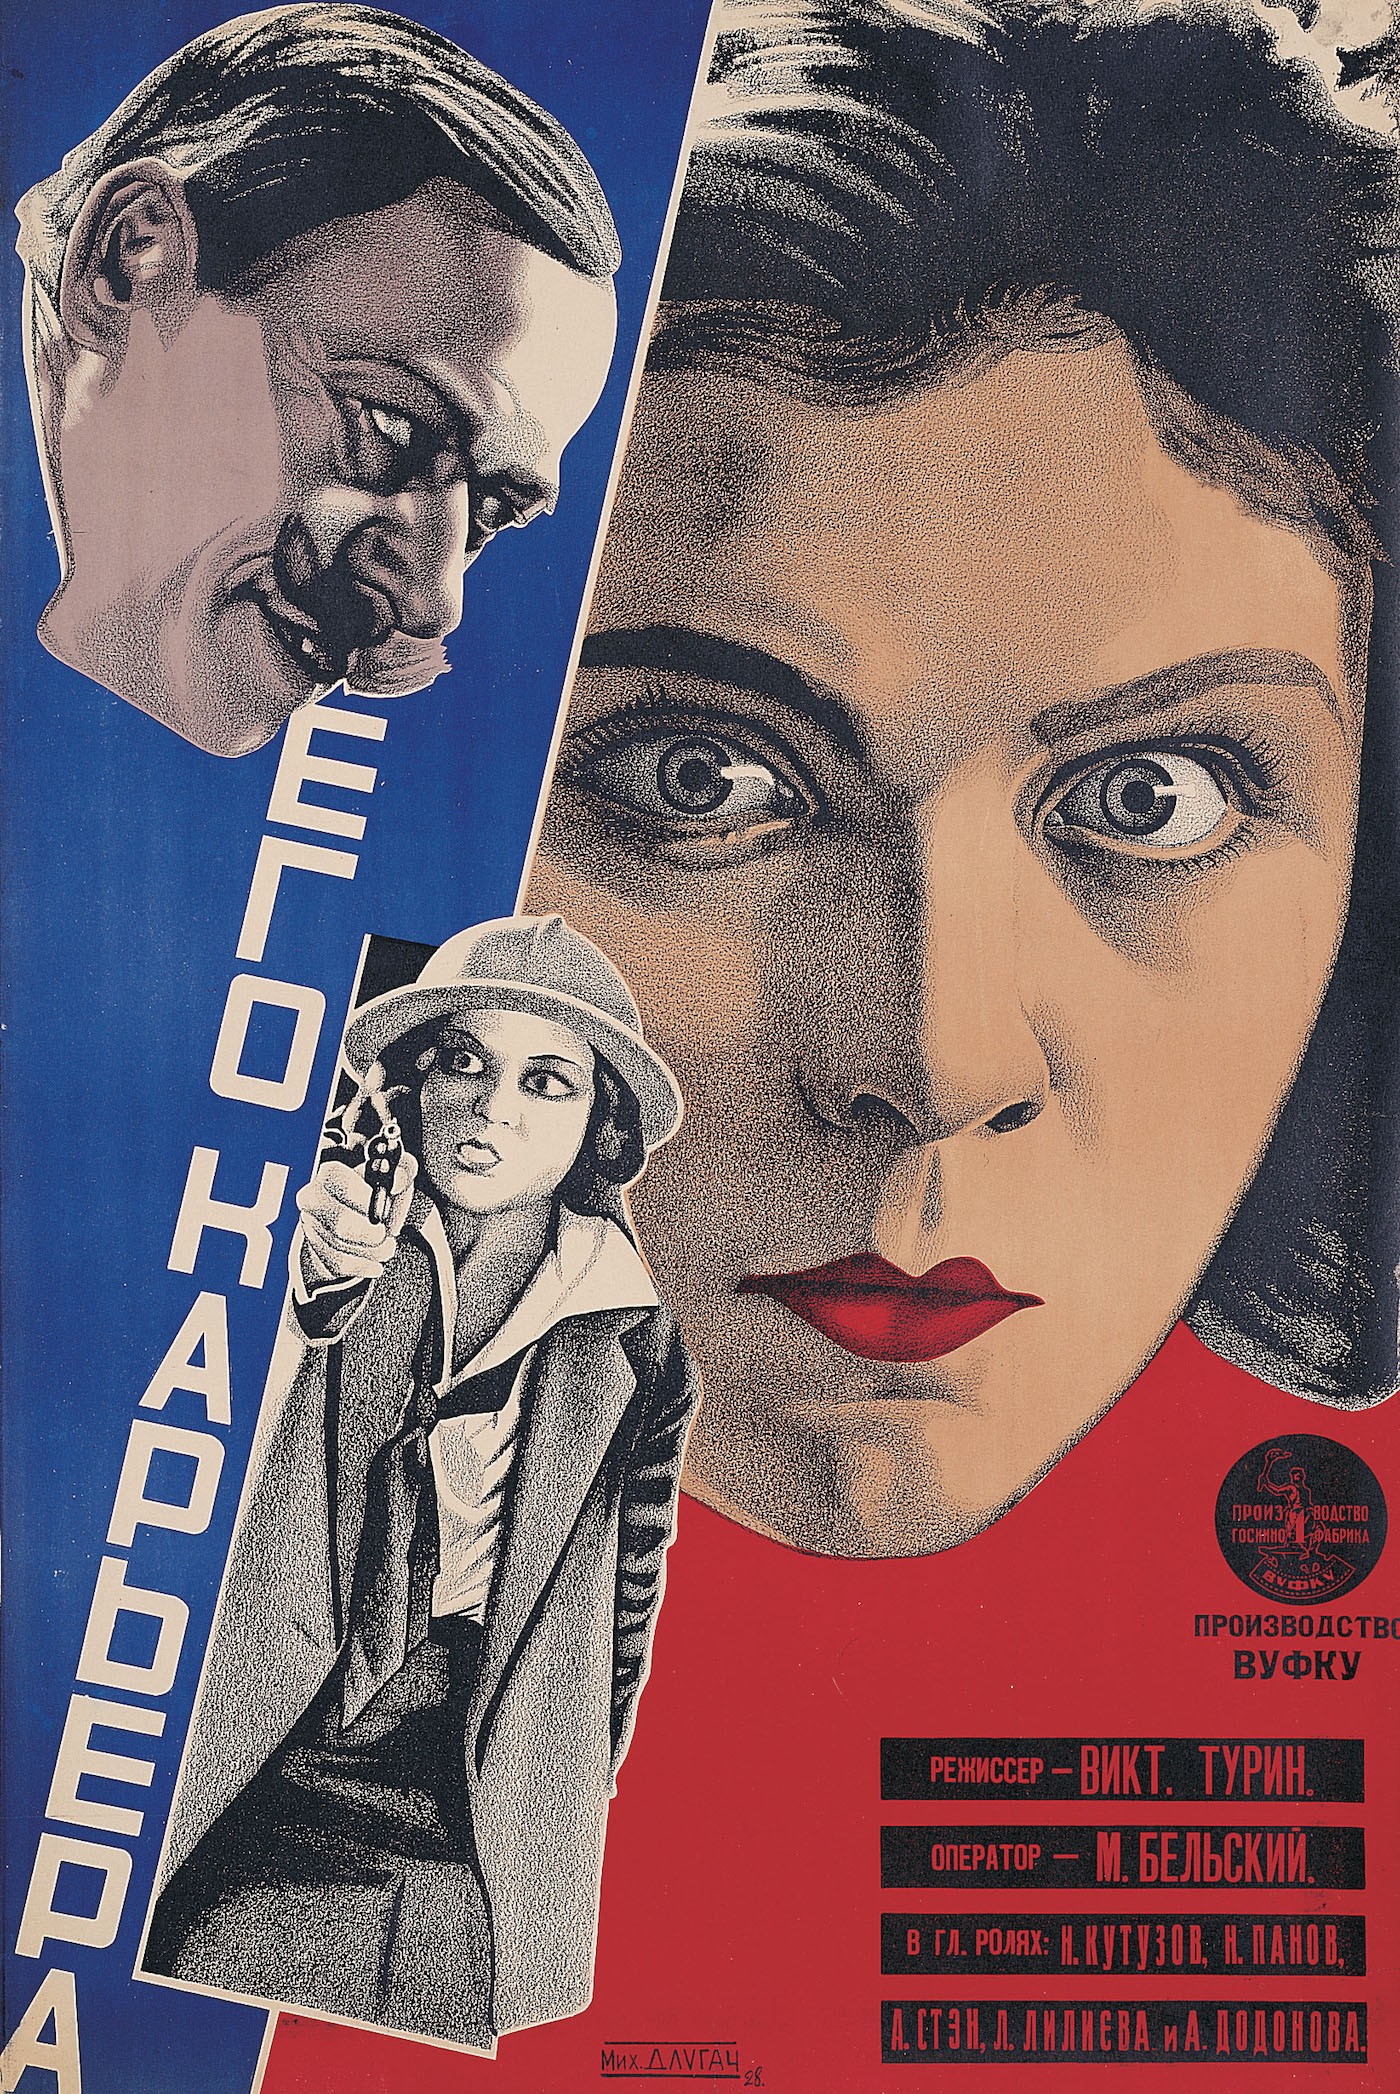 Его карьера, 1928. Режиссёр Виктор А. Турин